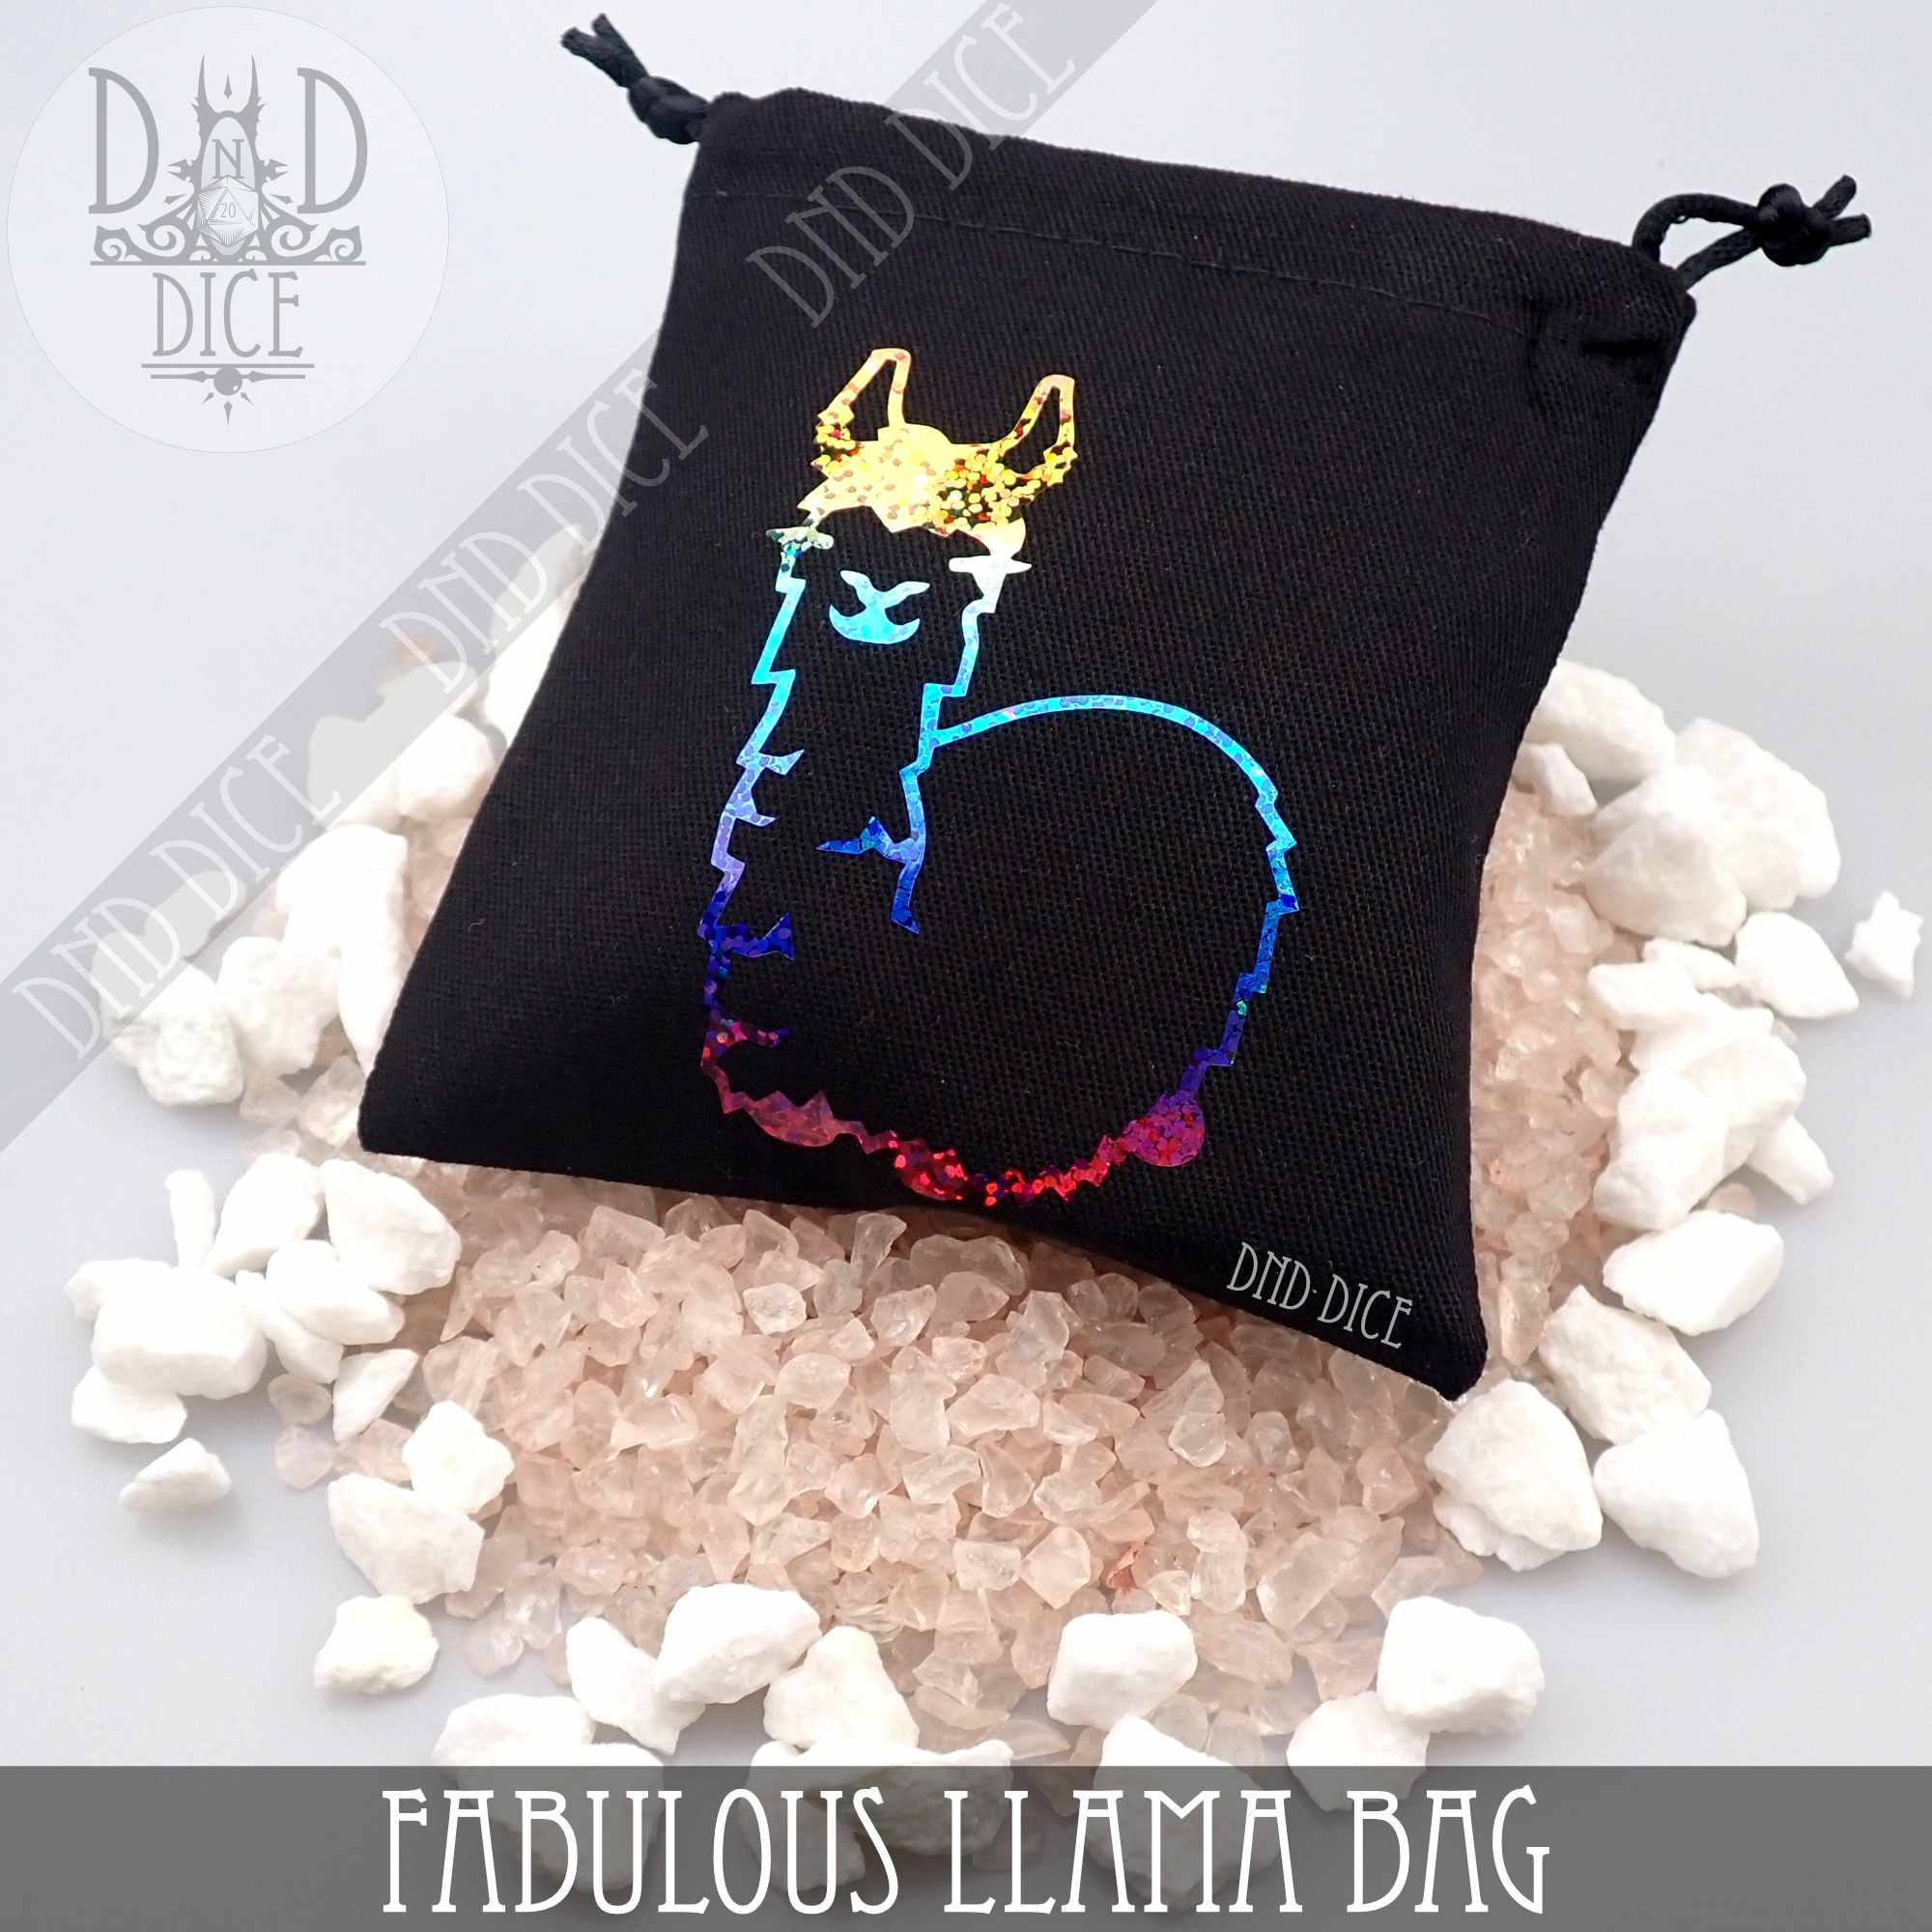 Fabulous Llama Bag